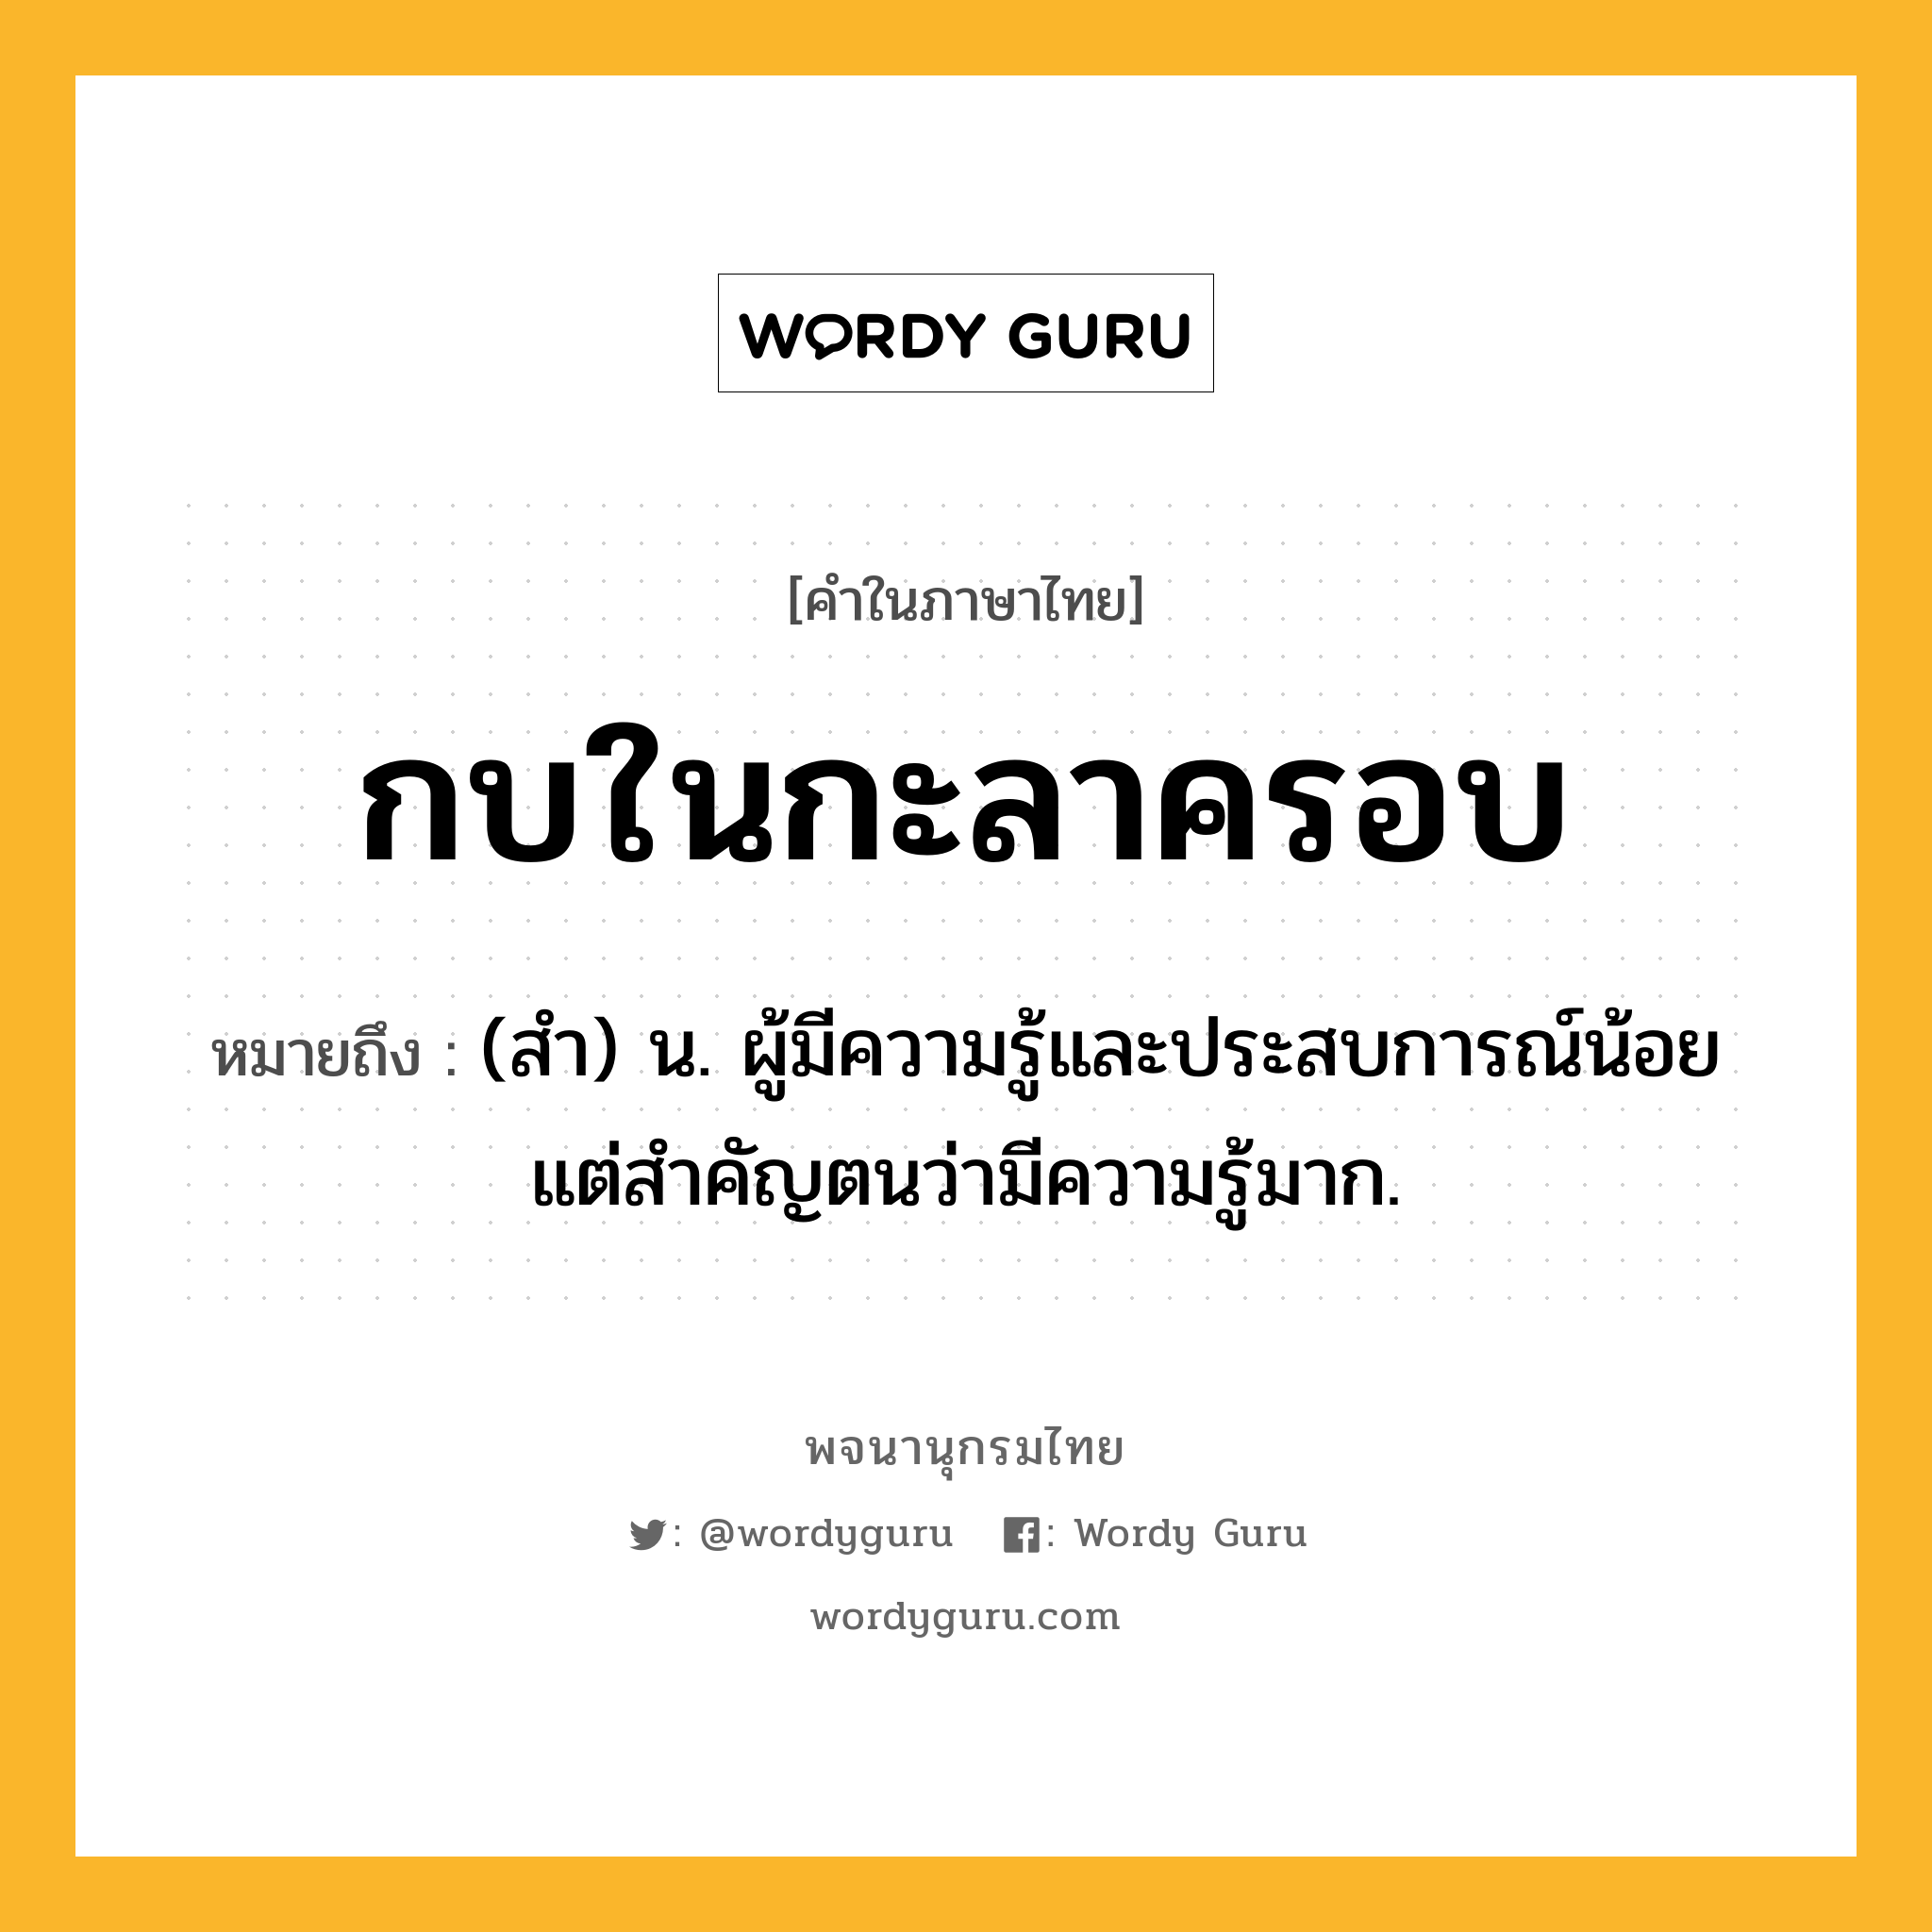 กบในกะลาครอบ ความหมาย หมายถึงอะไร?, คำในภาษาไทย กบในกะลาครอบ หมายถึง (สำ) น. ผู้มีความรู้และประสบการณ์น้อยแต่สำคัญตนว่ามีความรู้มาก.